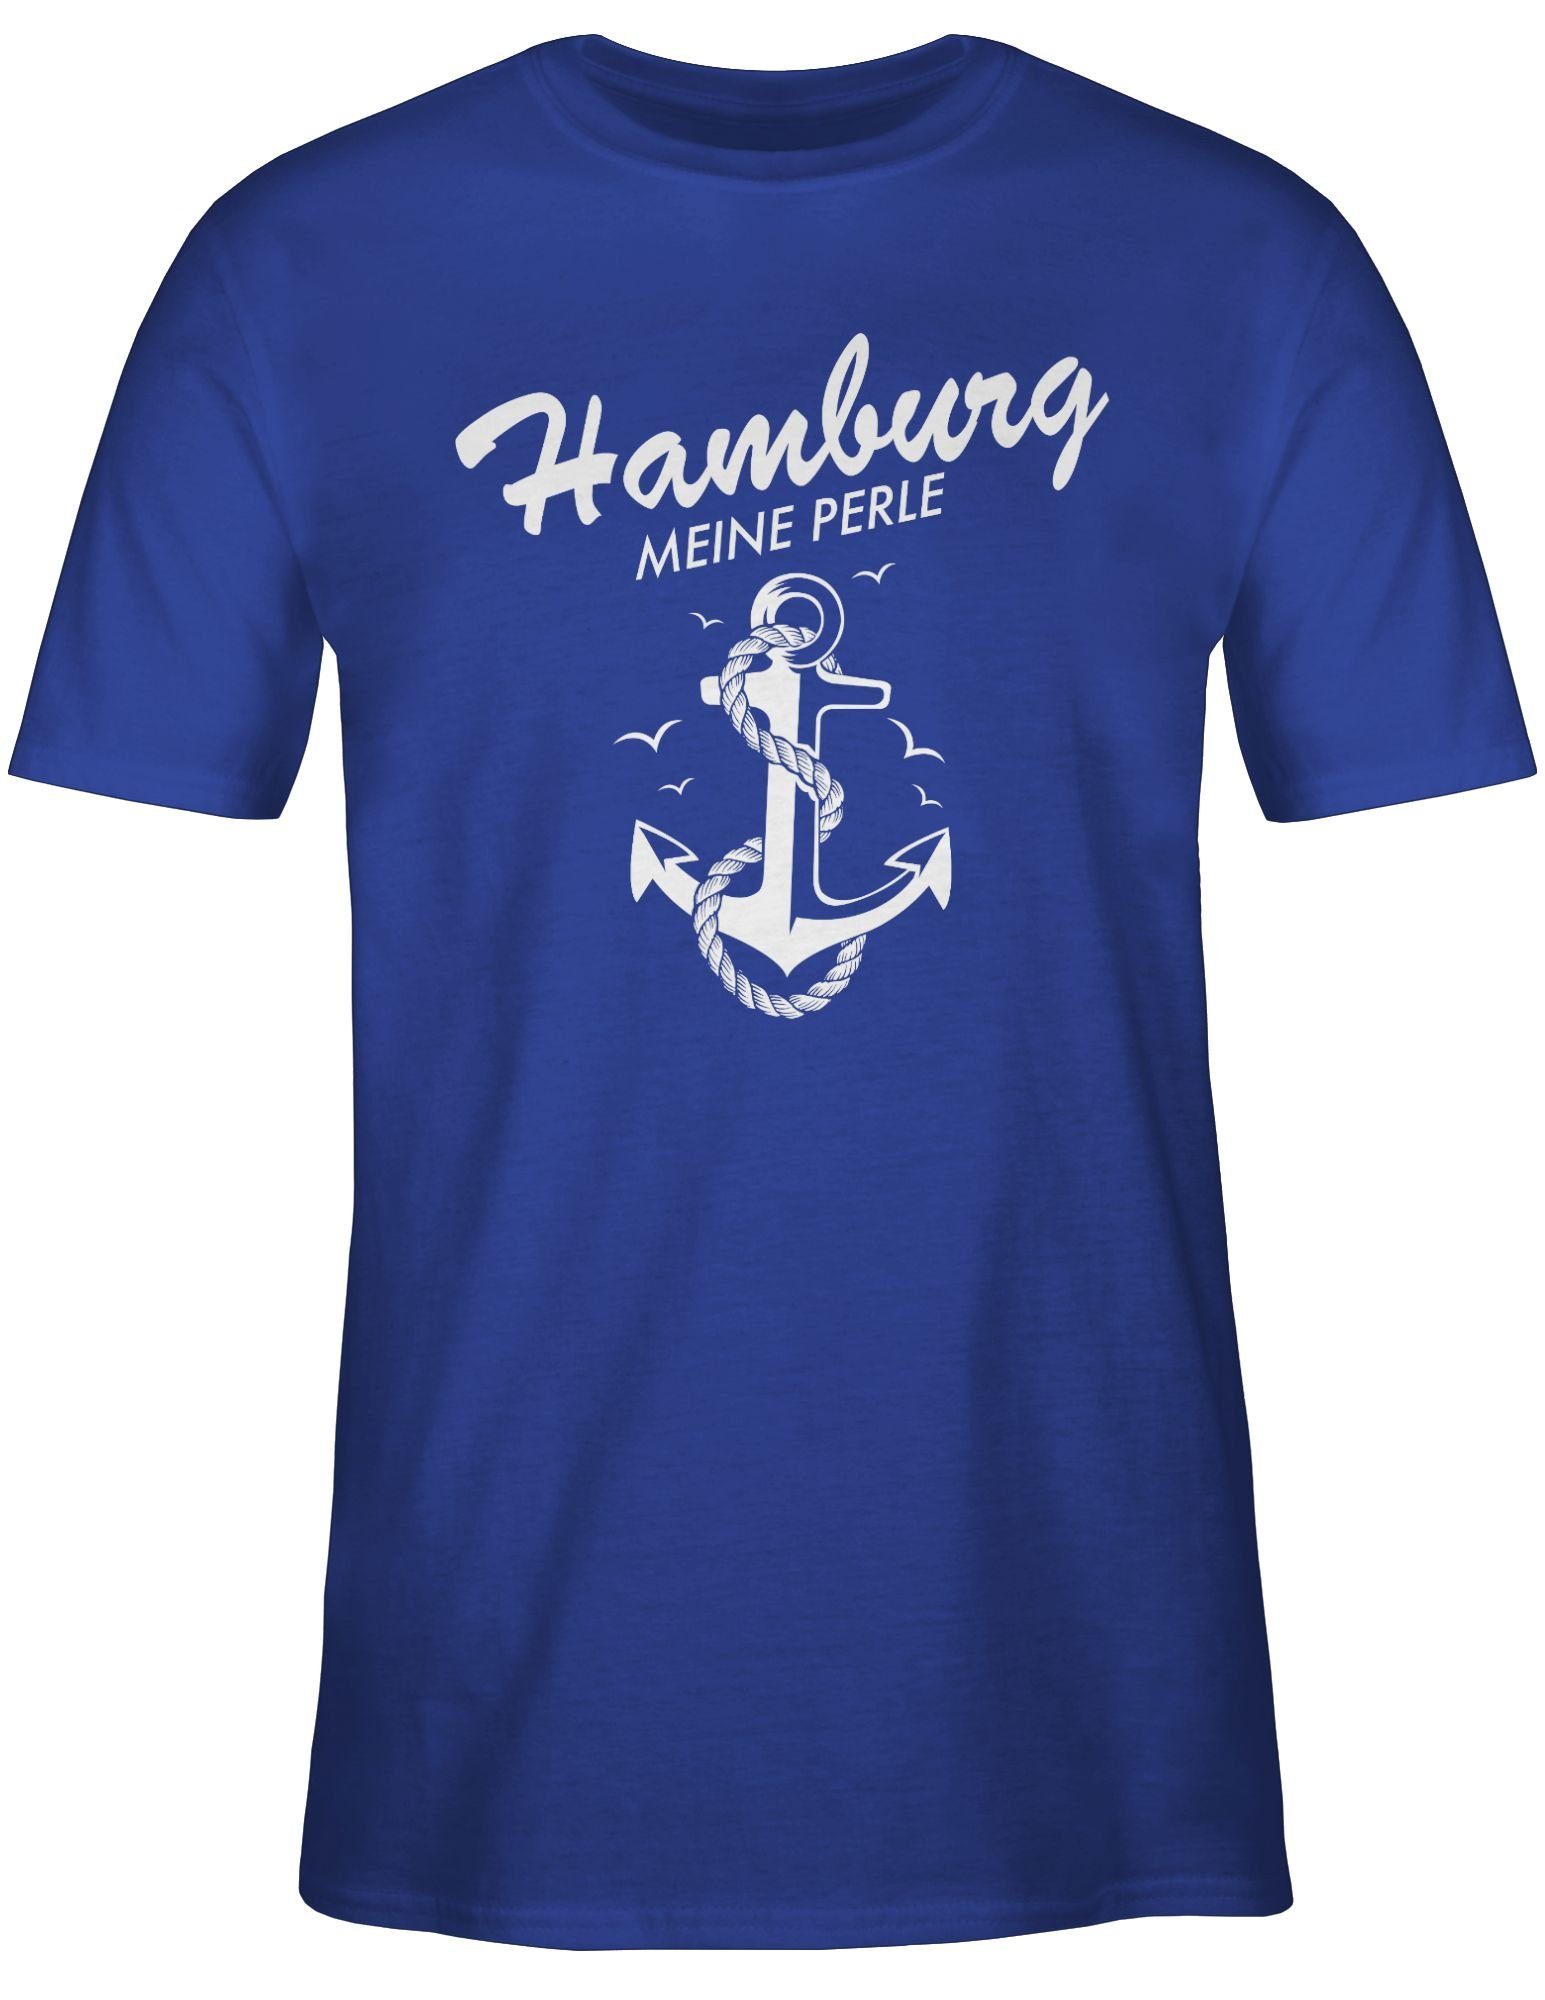 Shirtracer T-Shirt Hamburg - 02 Stadt und Royalblau Perle meine Outfit City